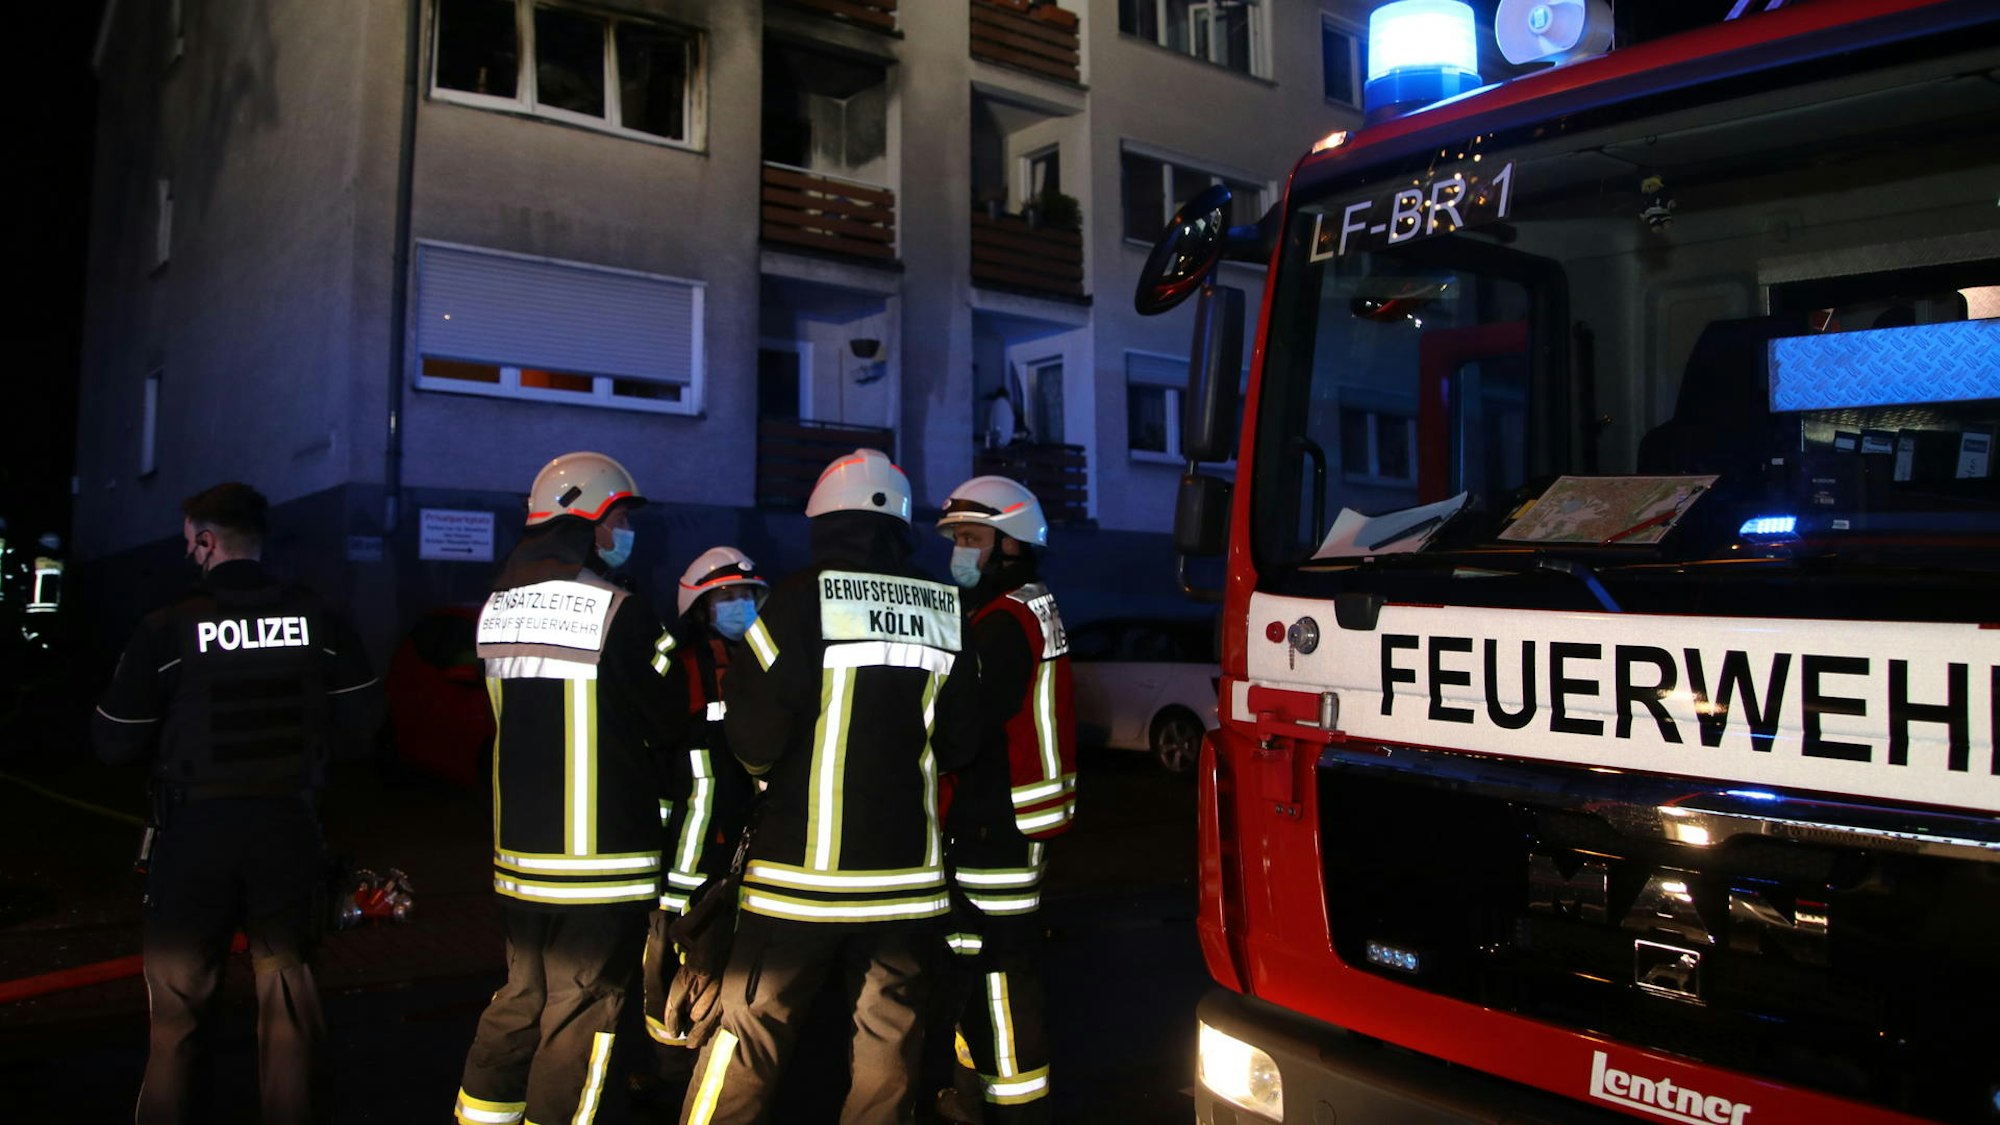 Feuerwehrleute, ein Polizist sowie ein Löschfahrzeug stehen in der Nacht vor einem Mehrfamilienhaus.